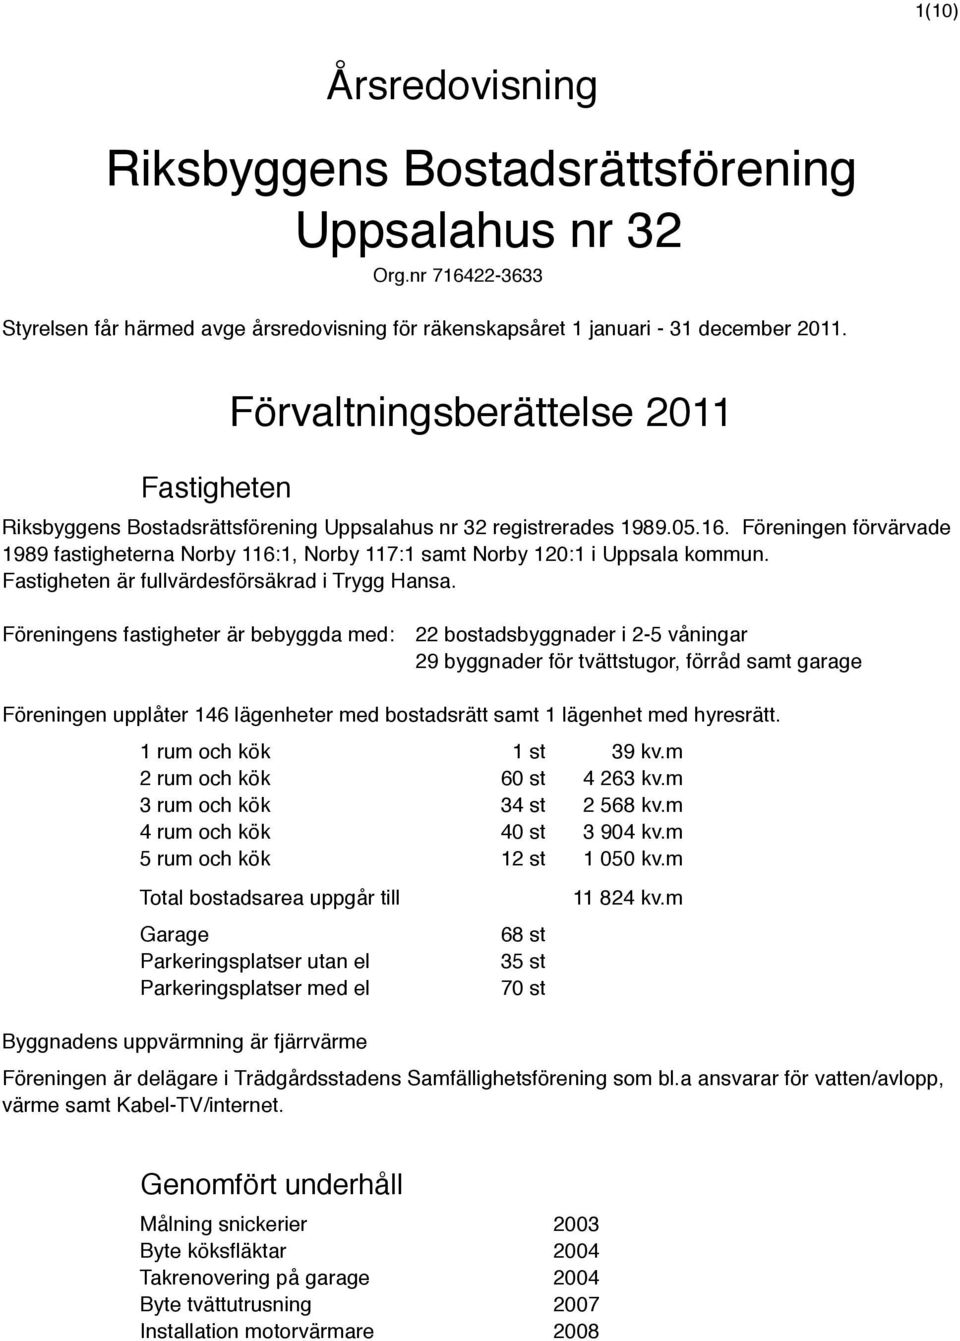 Föreningen förvärvade 1989 fastigheterna Norby 116:1, Norby 117:1 samt Norby 120:1 i Uppsala kommun. Fastigheten är fullvärdesförsäkrad i Trygg Hansa.